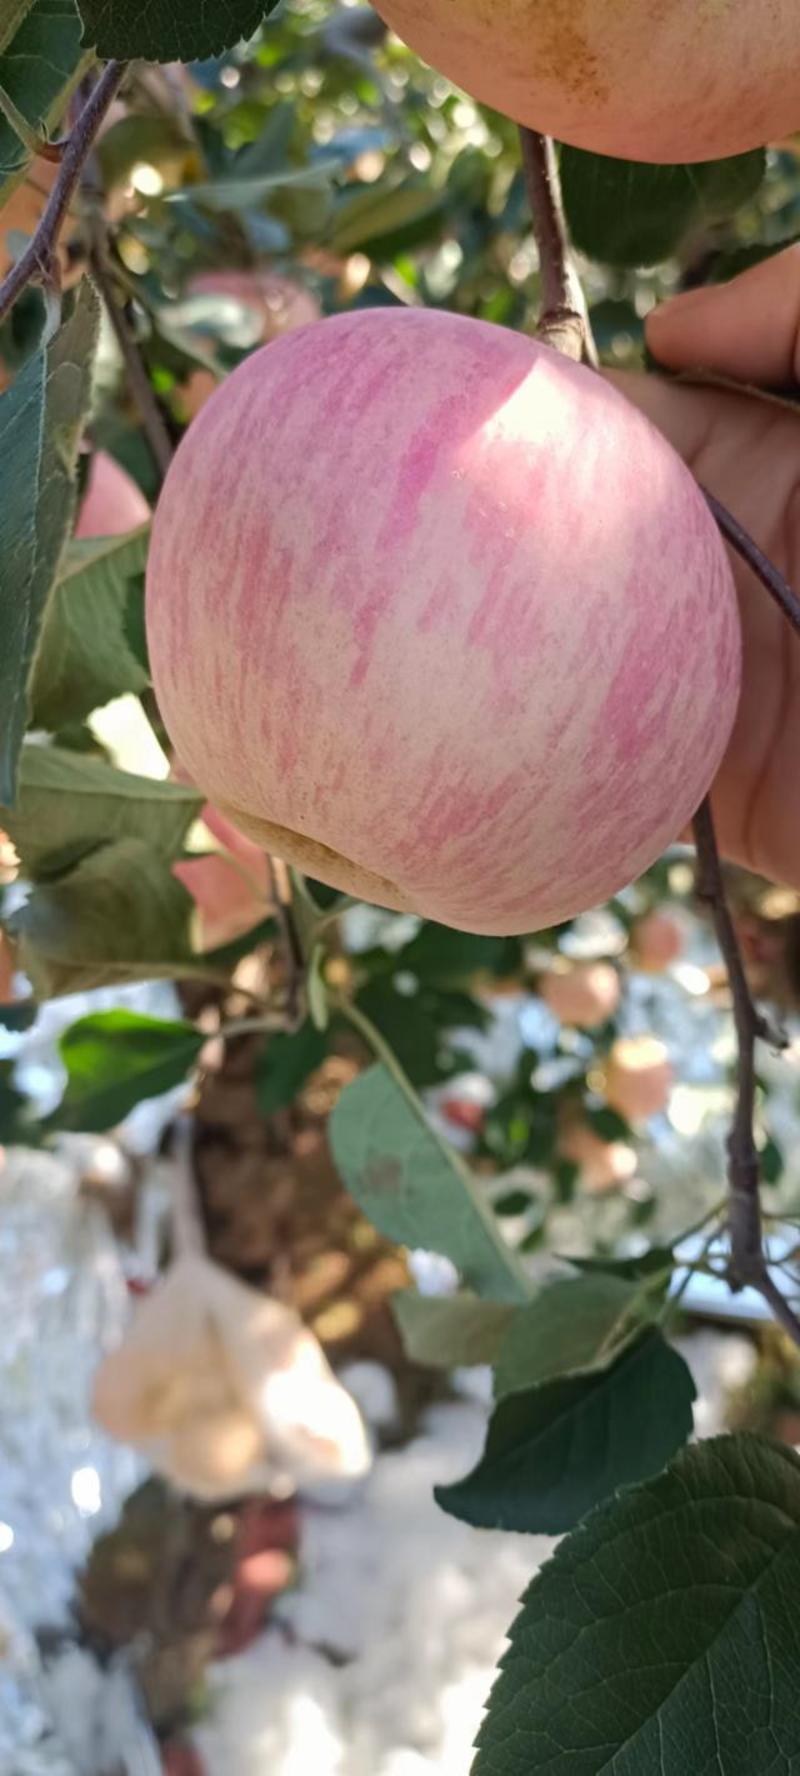 山东苹果当季热销水果红富士苹果产地直发一件代发非丑苹果